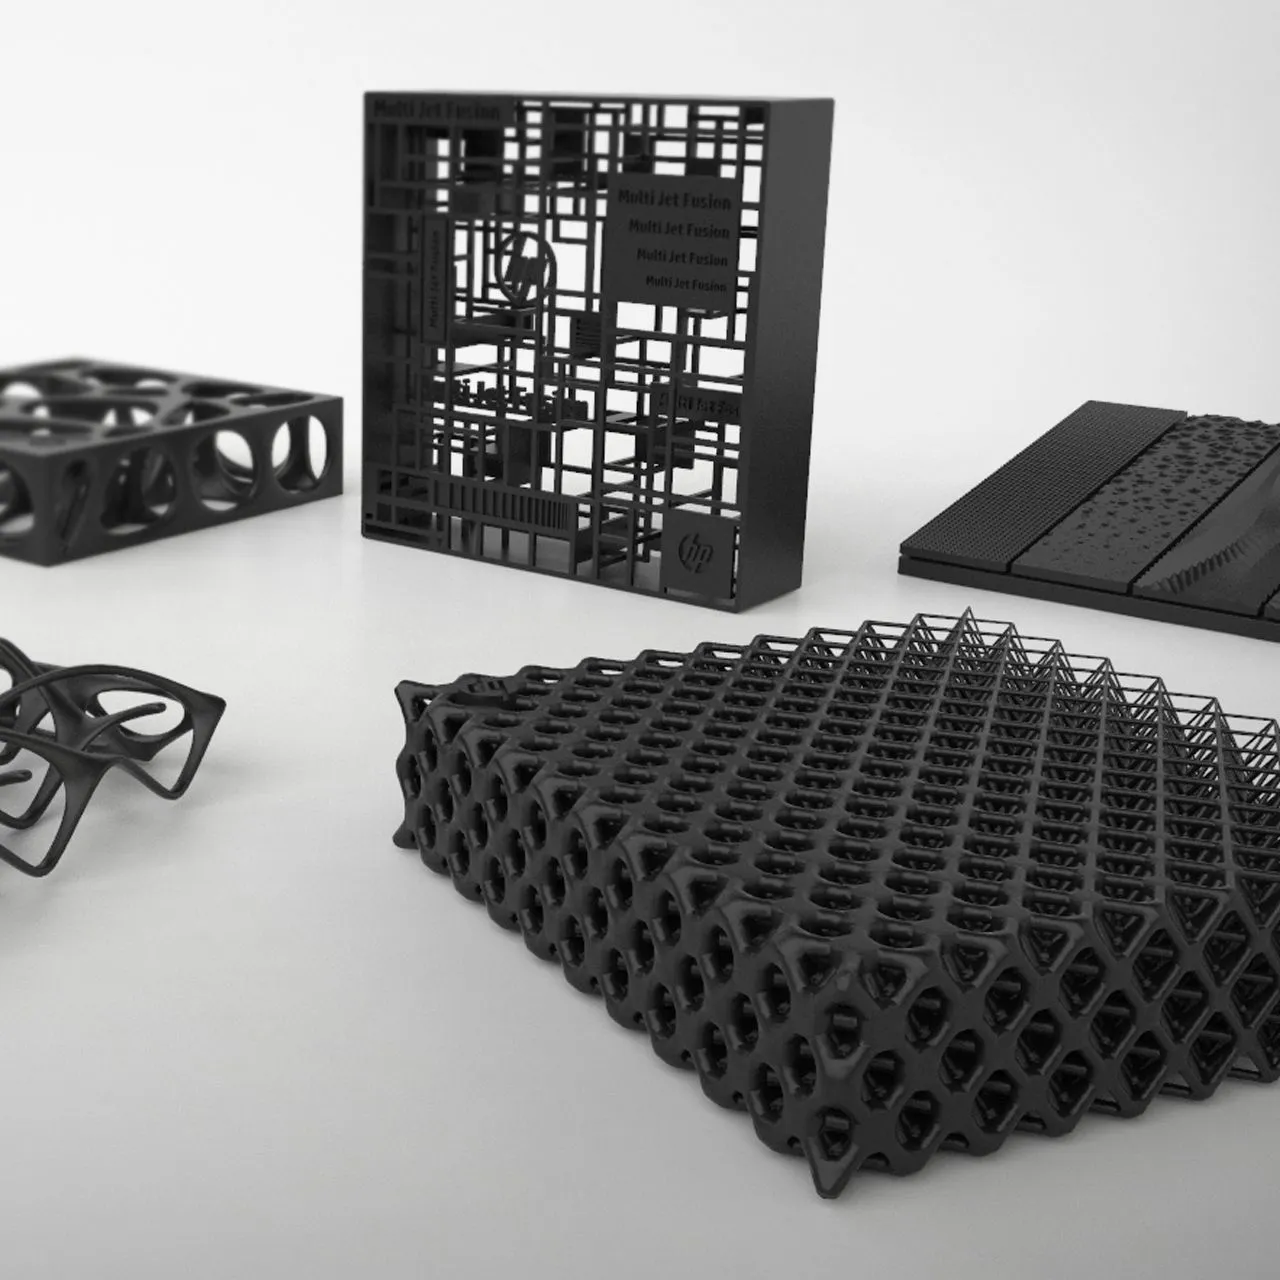 Özel 3D baskı hizmeti 3D baskılı hareketli çin mafsallı ejderha